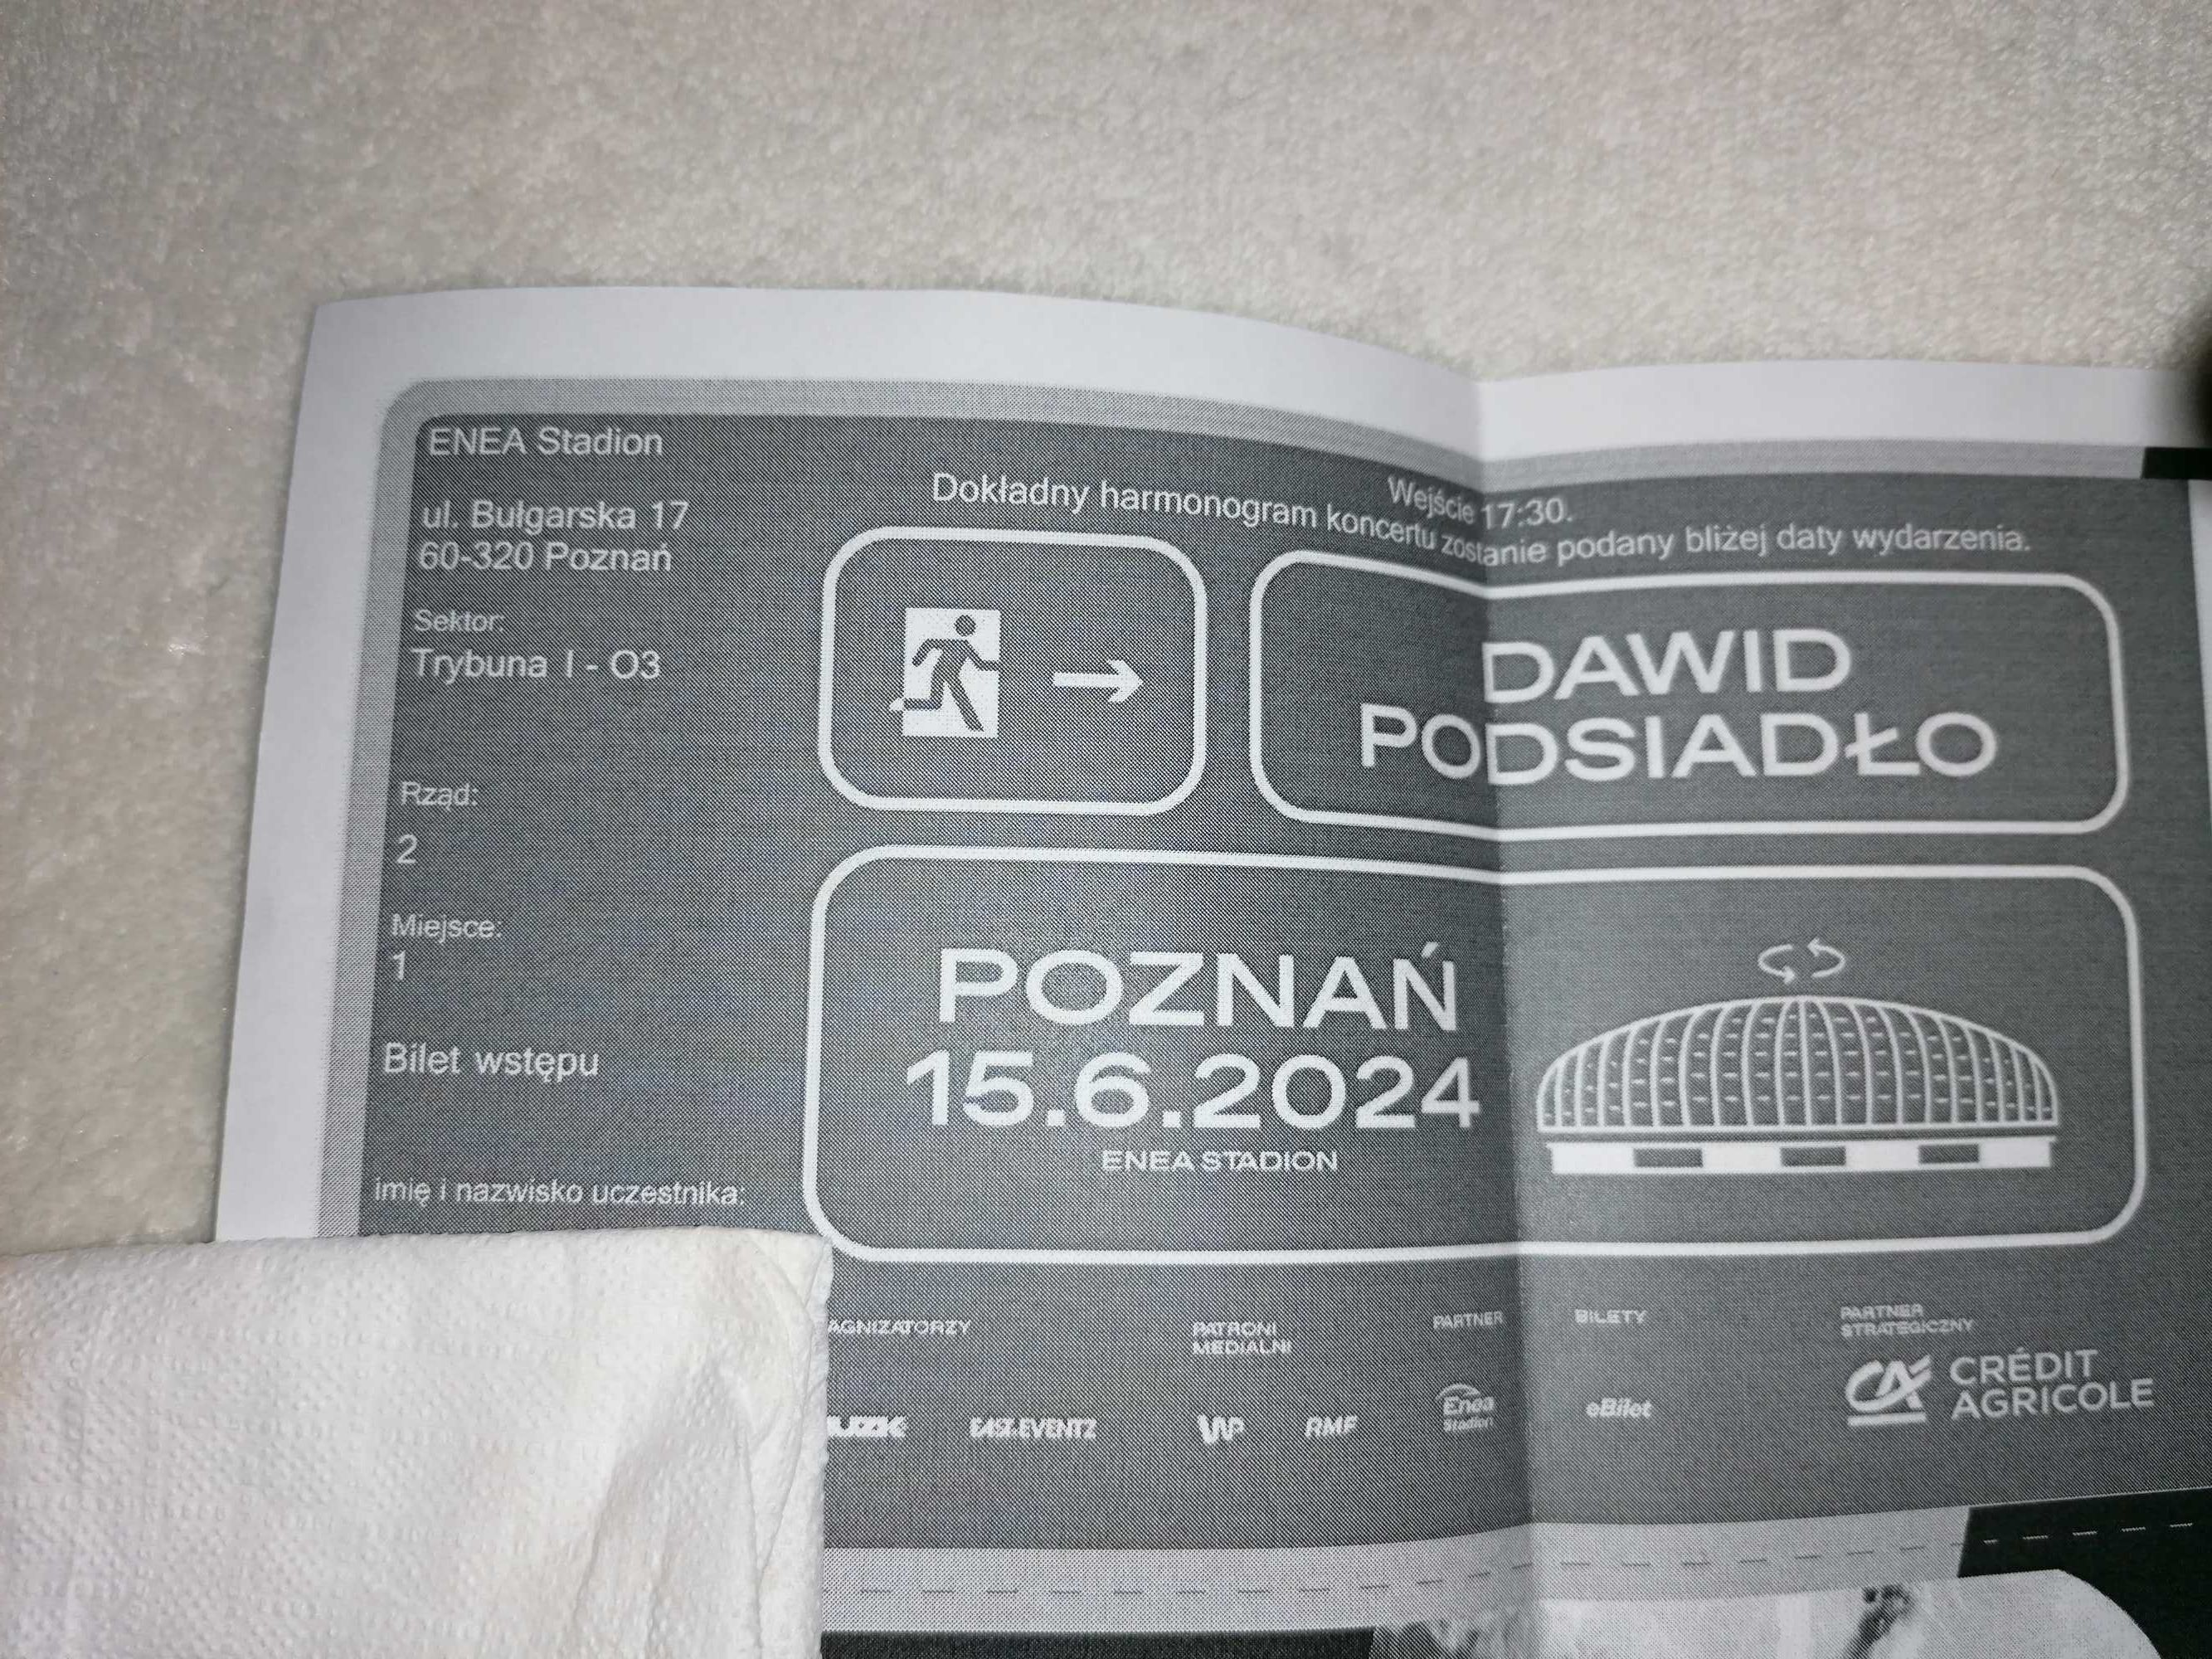 Dawid podsiadło koncert 15. 06.24 Poznań